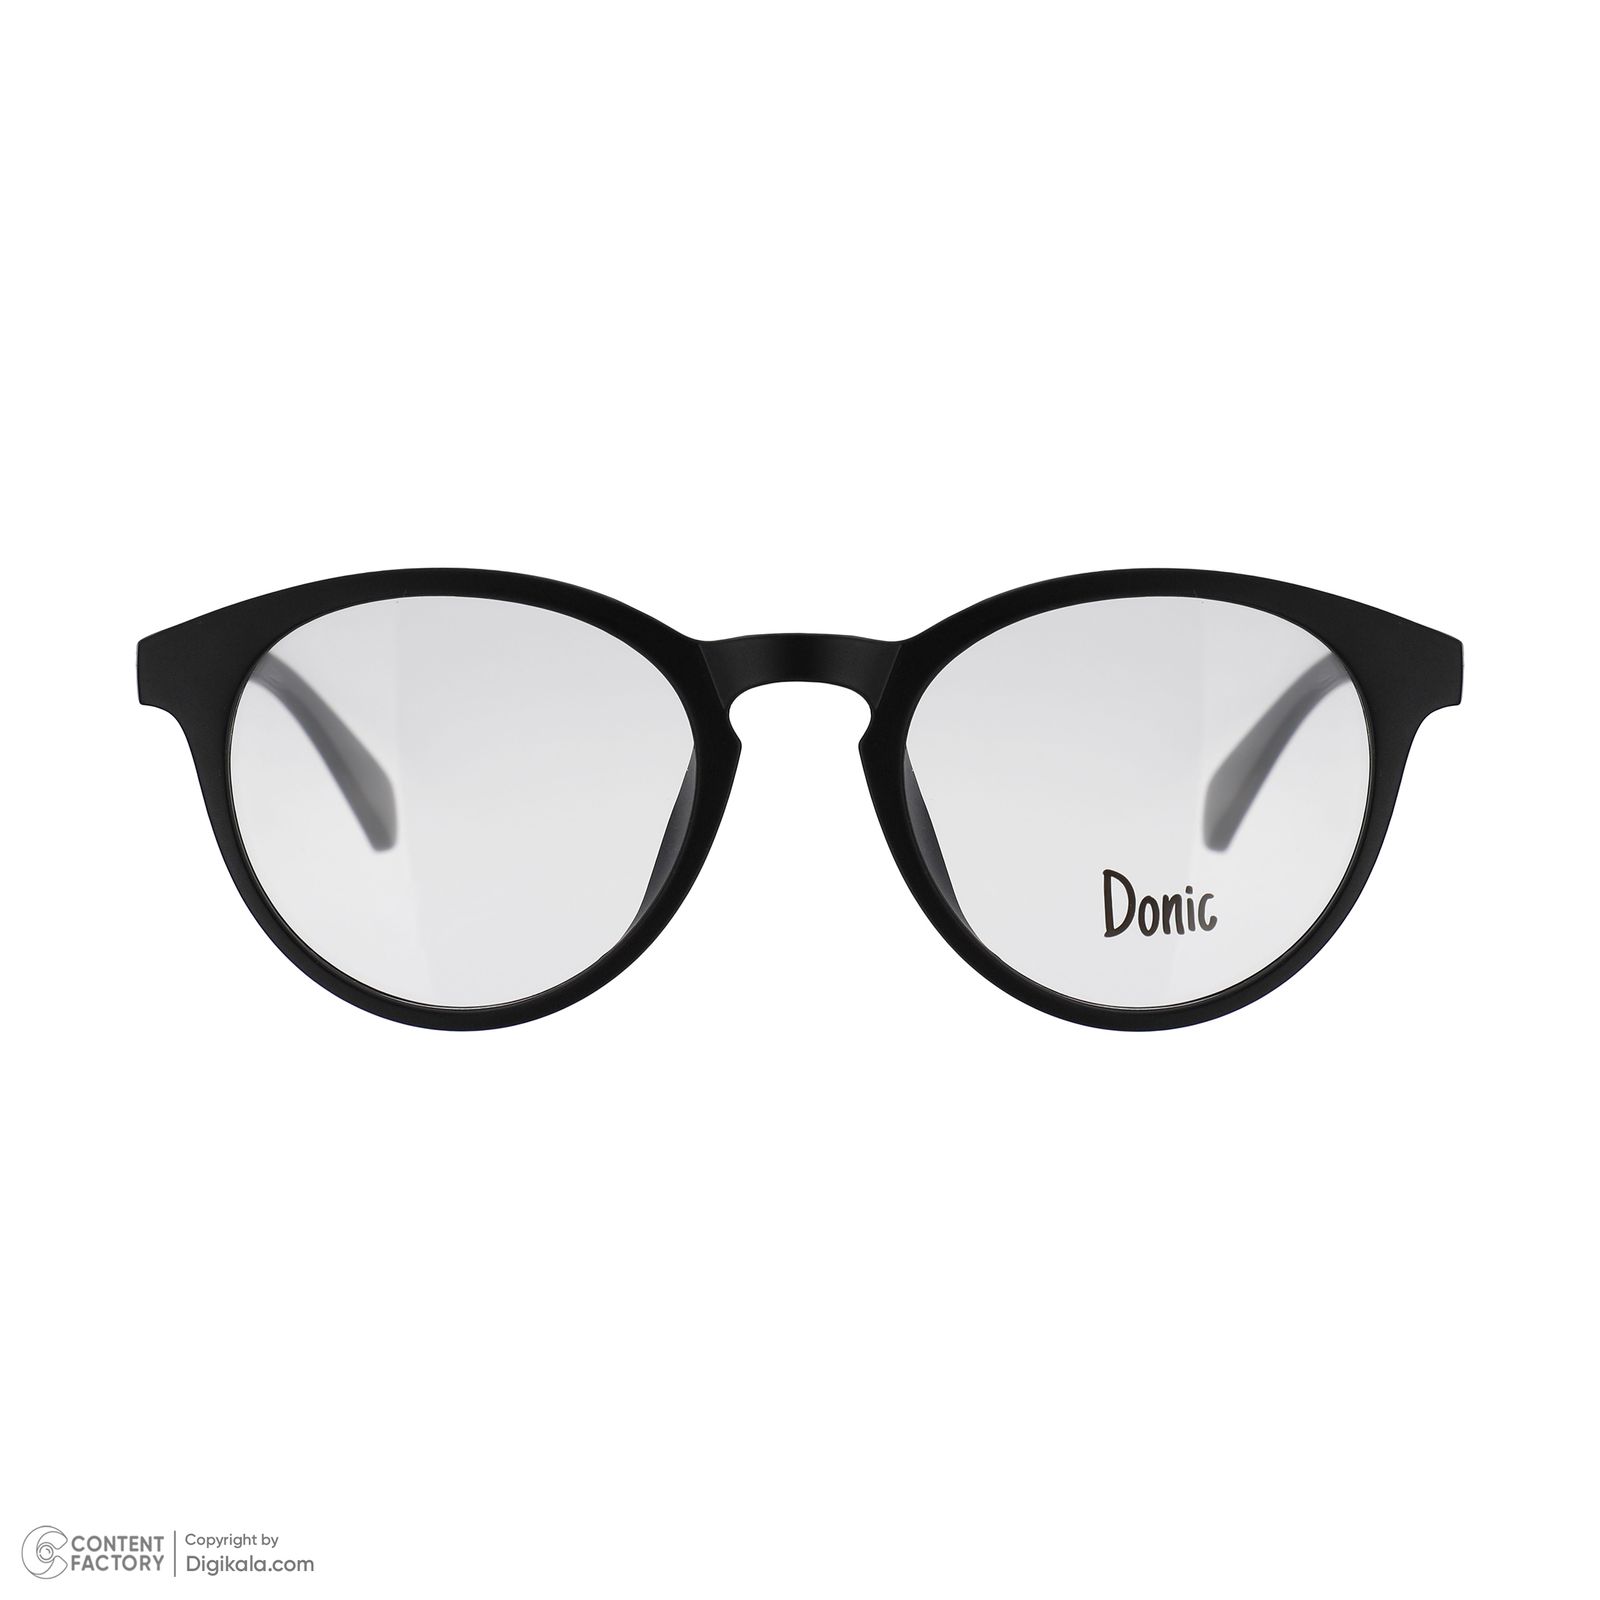 فریم عینک طبی دونیک مدل tr2205-c2 به همراه کاور آفتابی مجموعه 5 عددی -  - 2